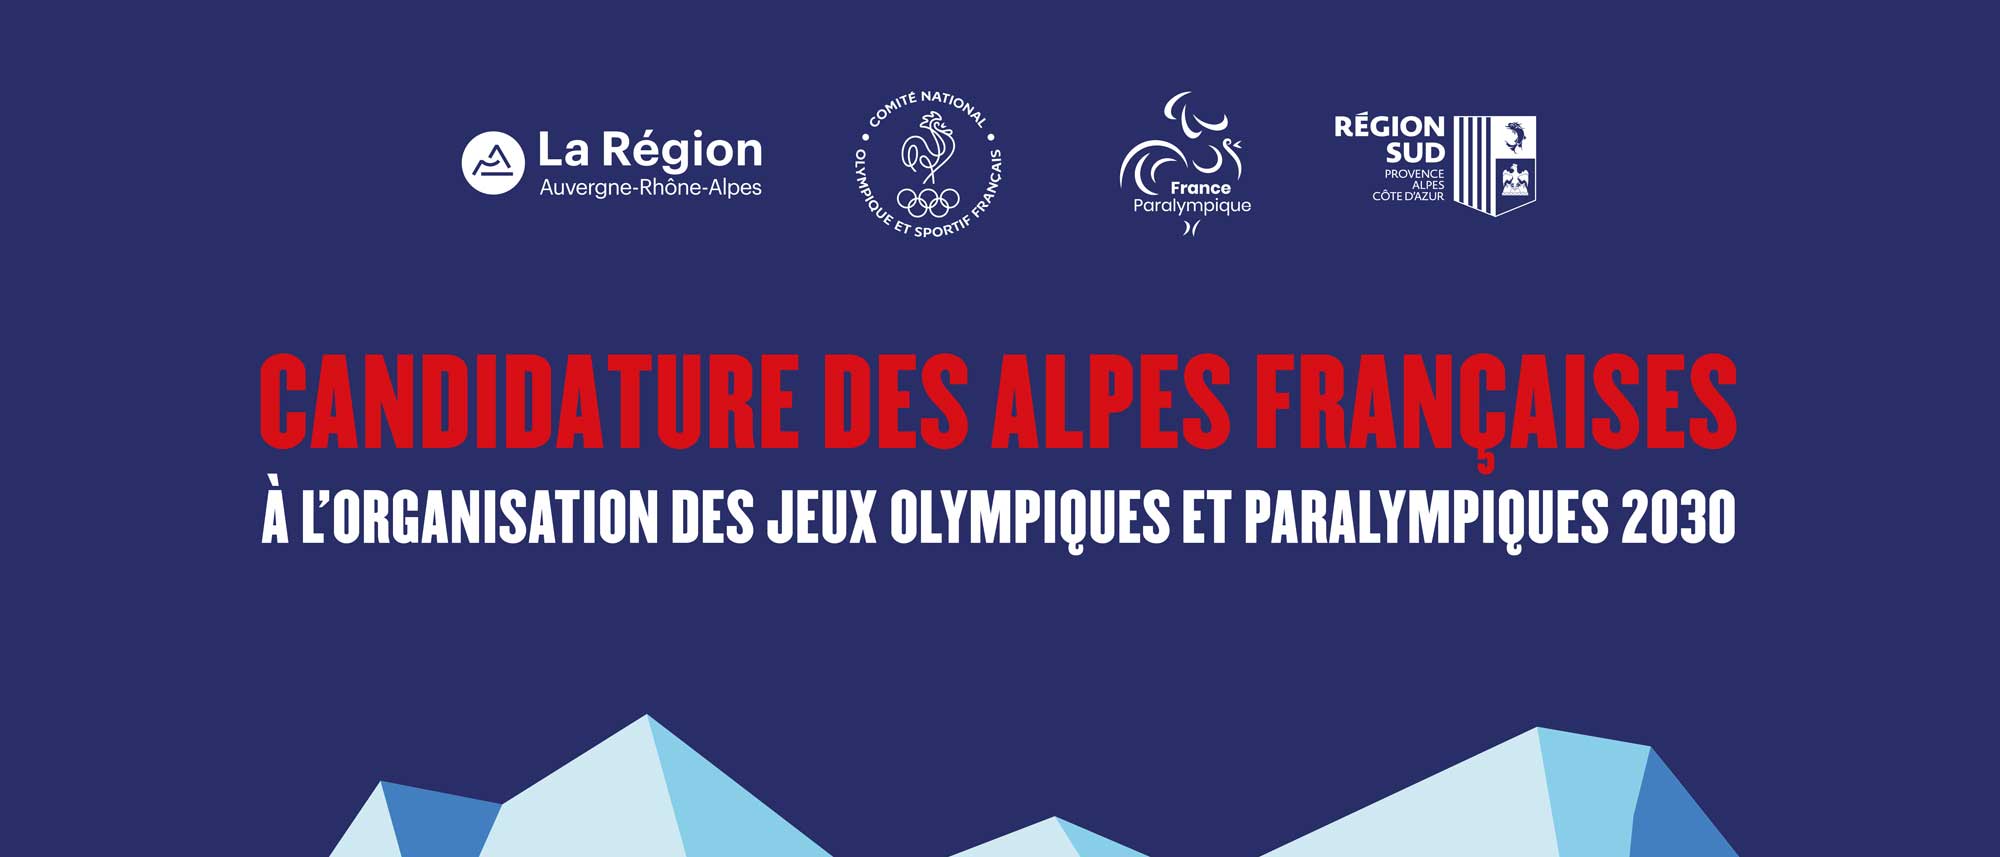 Les Alpes françaises, candidate pour les Jeux Olympiques et Paralympiques  de 2030 ! - FFS